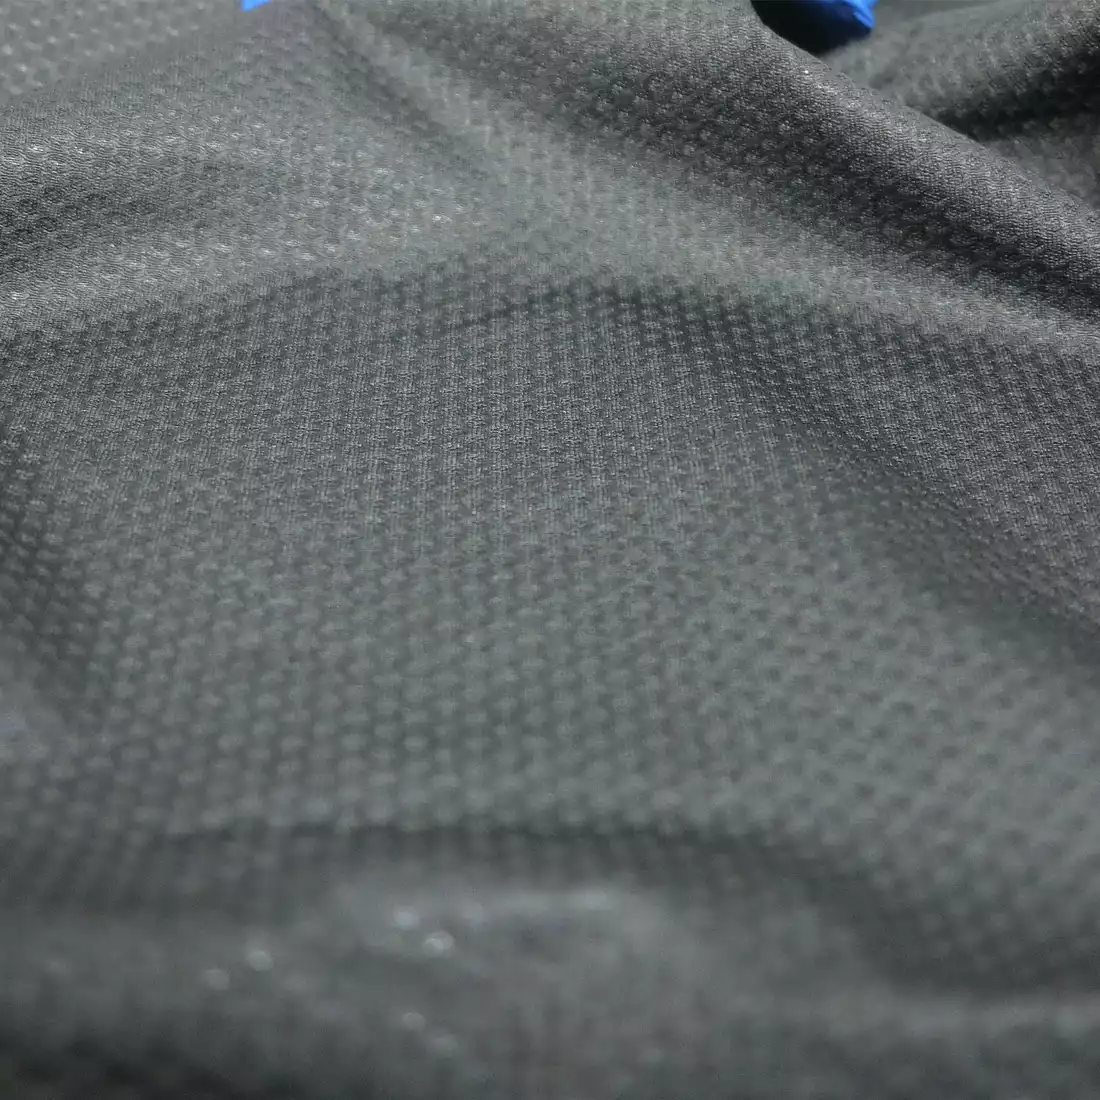 Softshell VESPER kurtka sportowa szary-niebieski